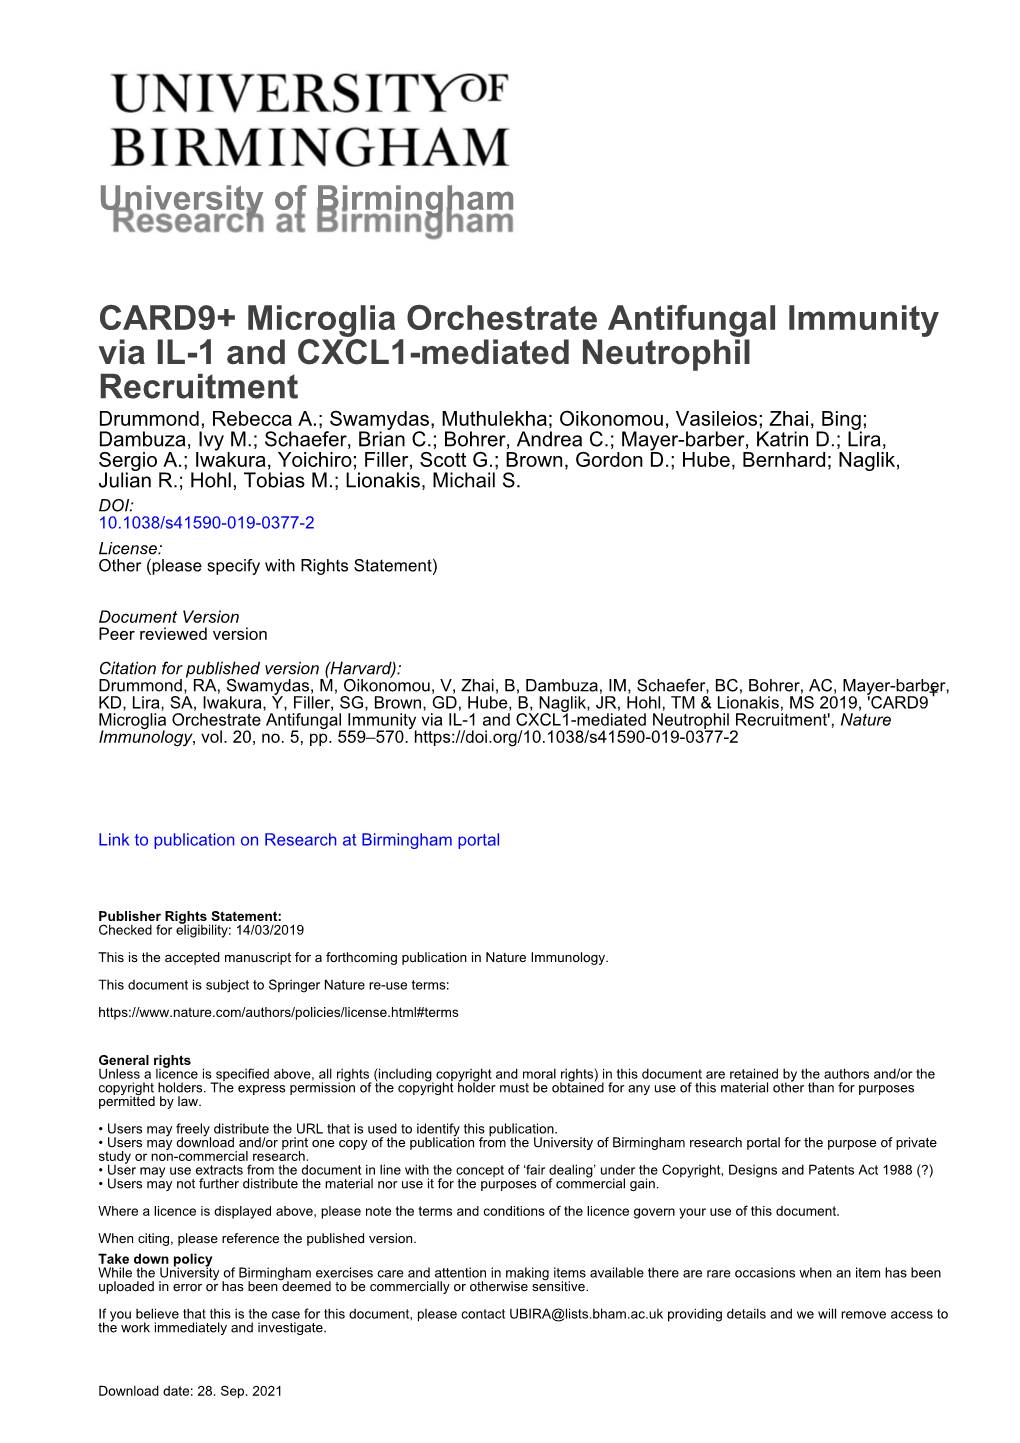 CARD9+ Microglia Orchestrate Antifungal Immunity Via IL-1 And